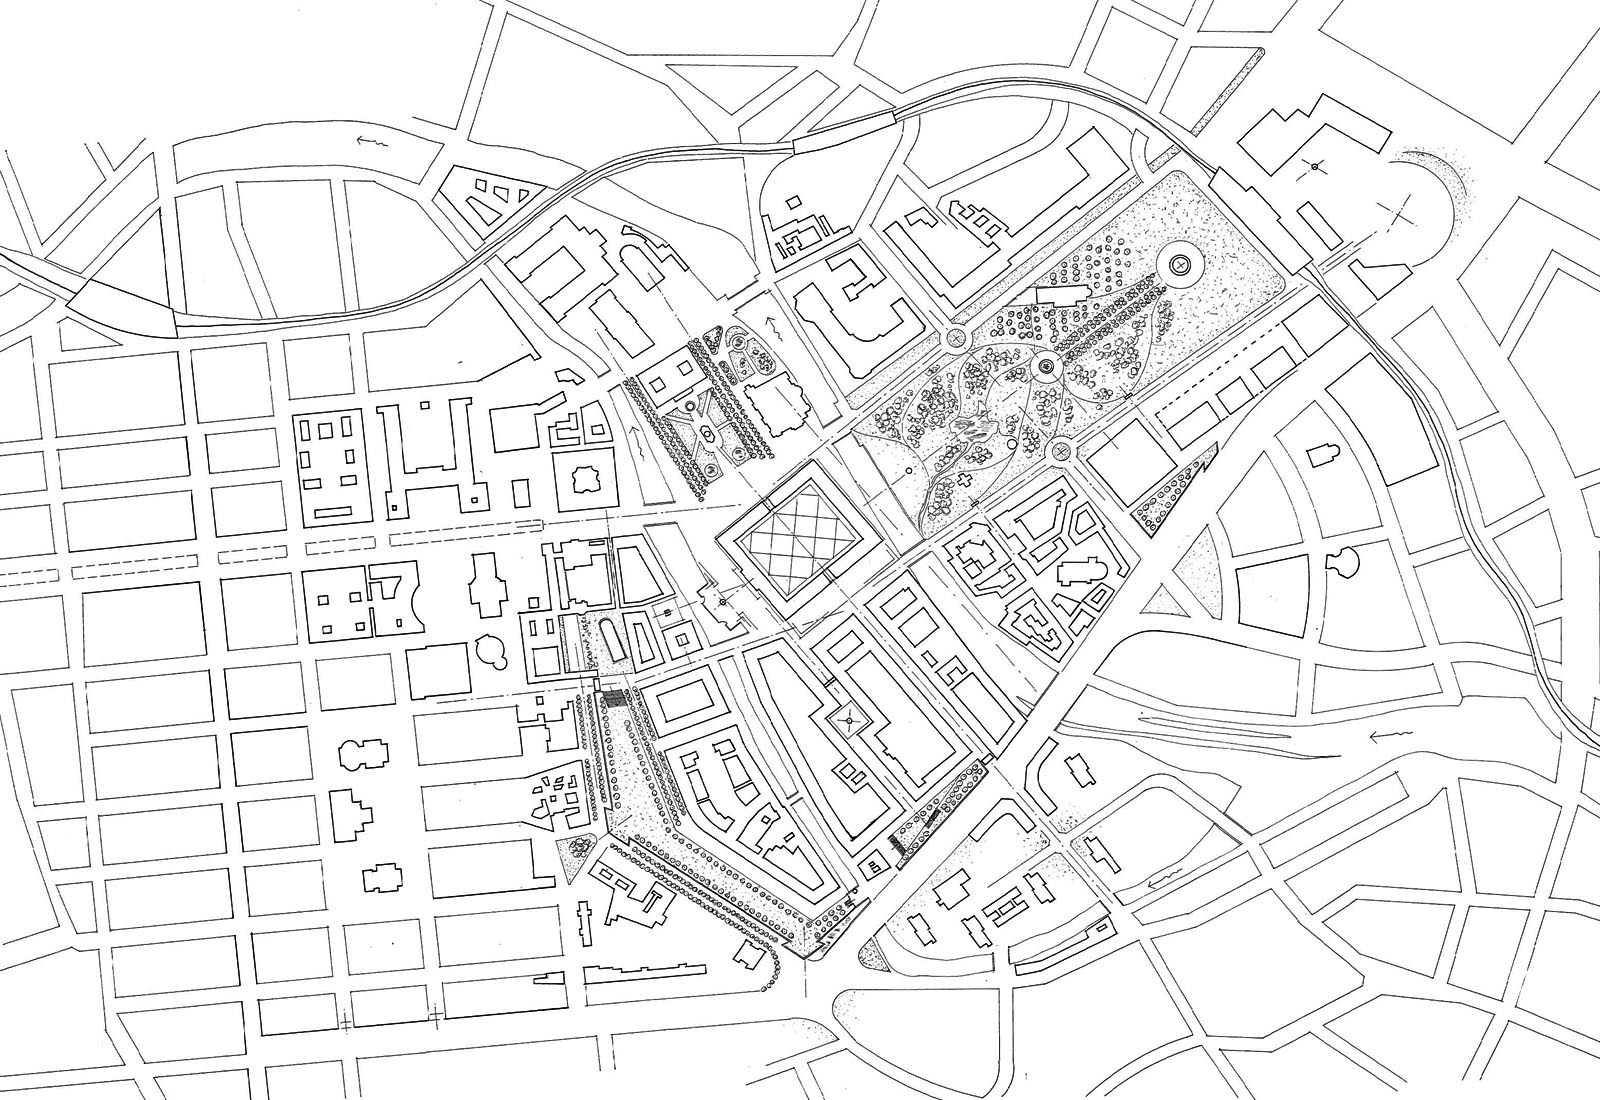 Berlin Spreeinsel project in Berlin - General plan view